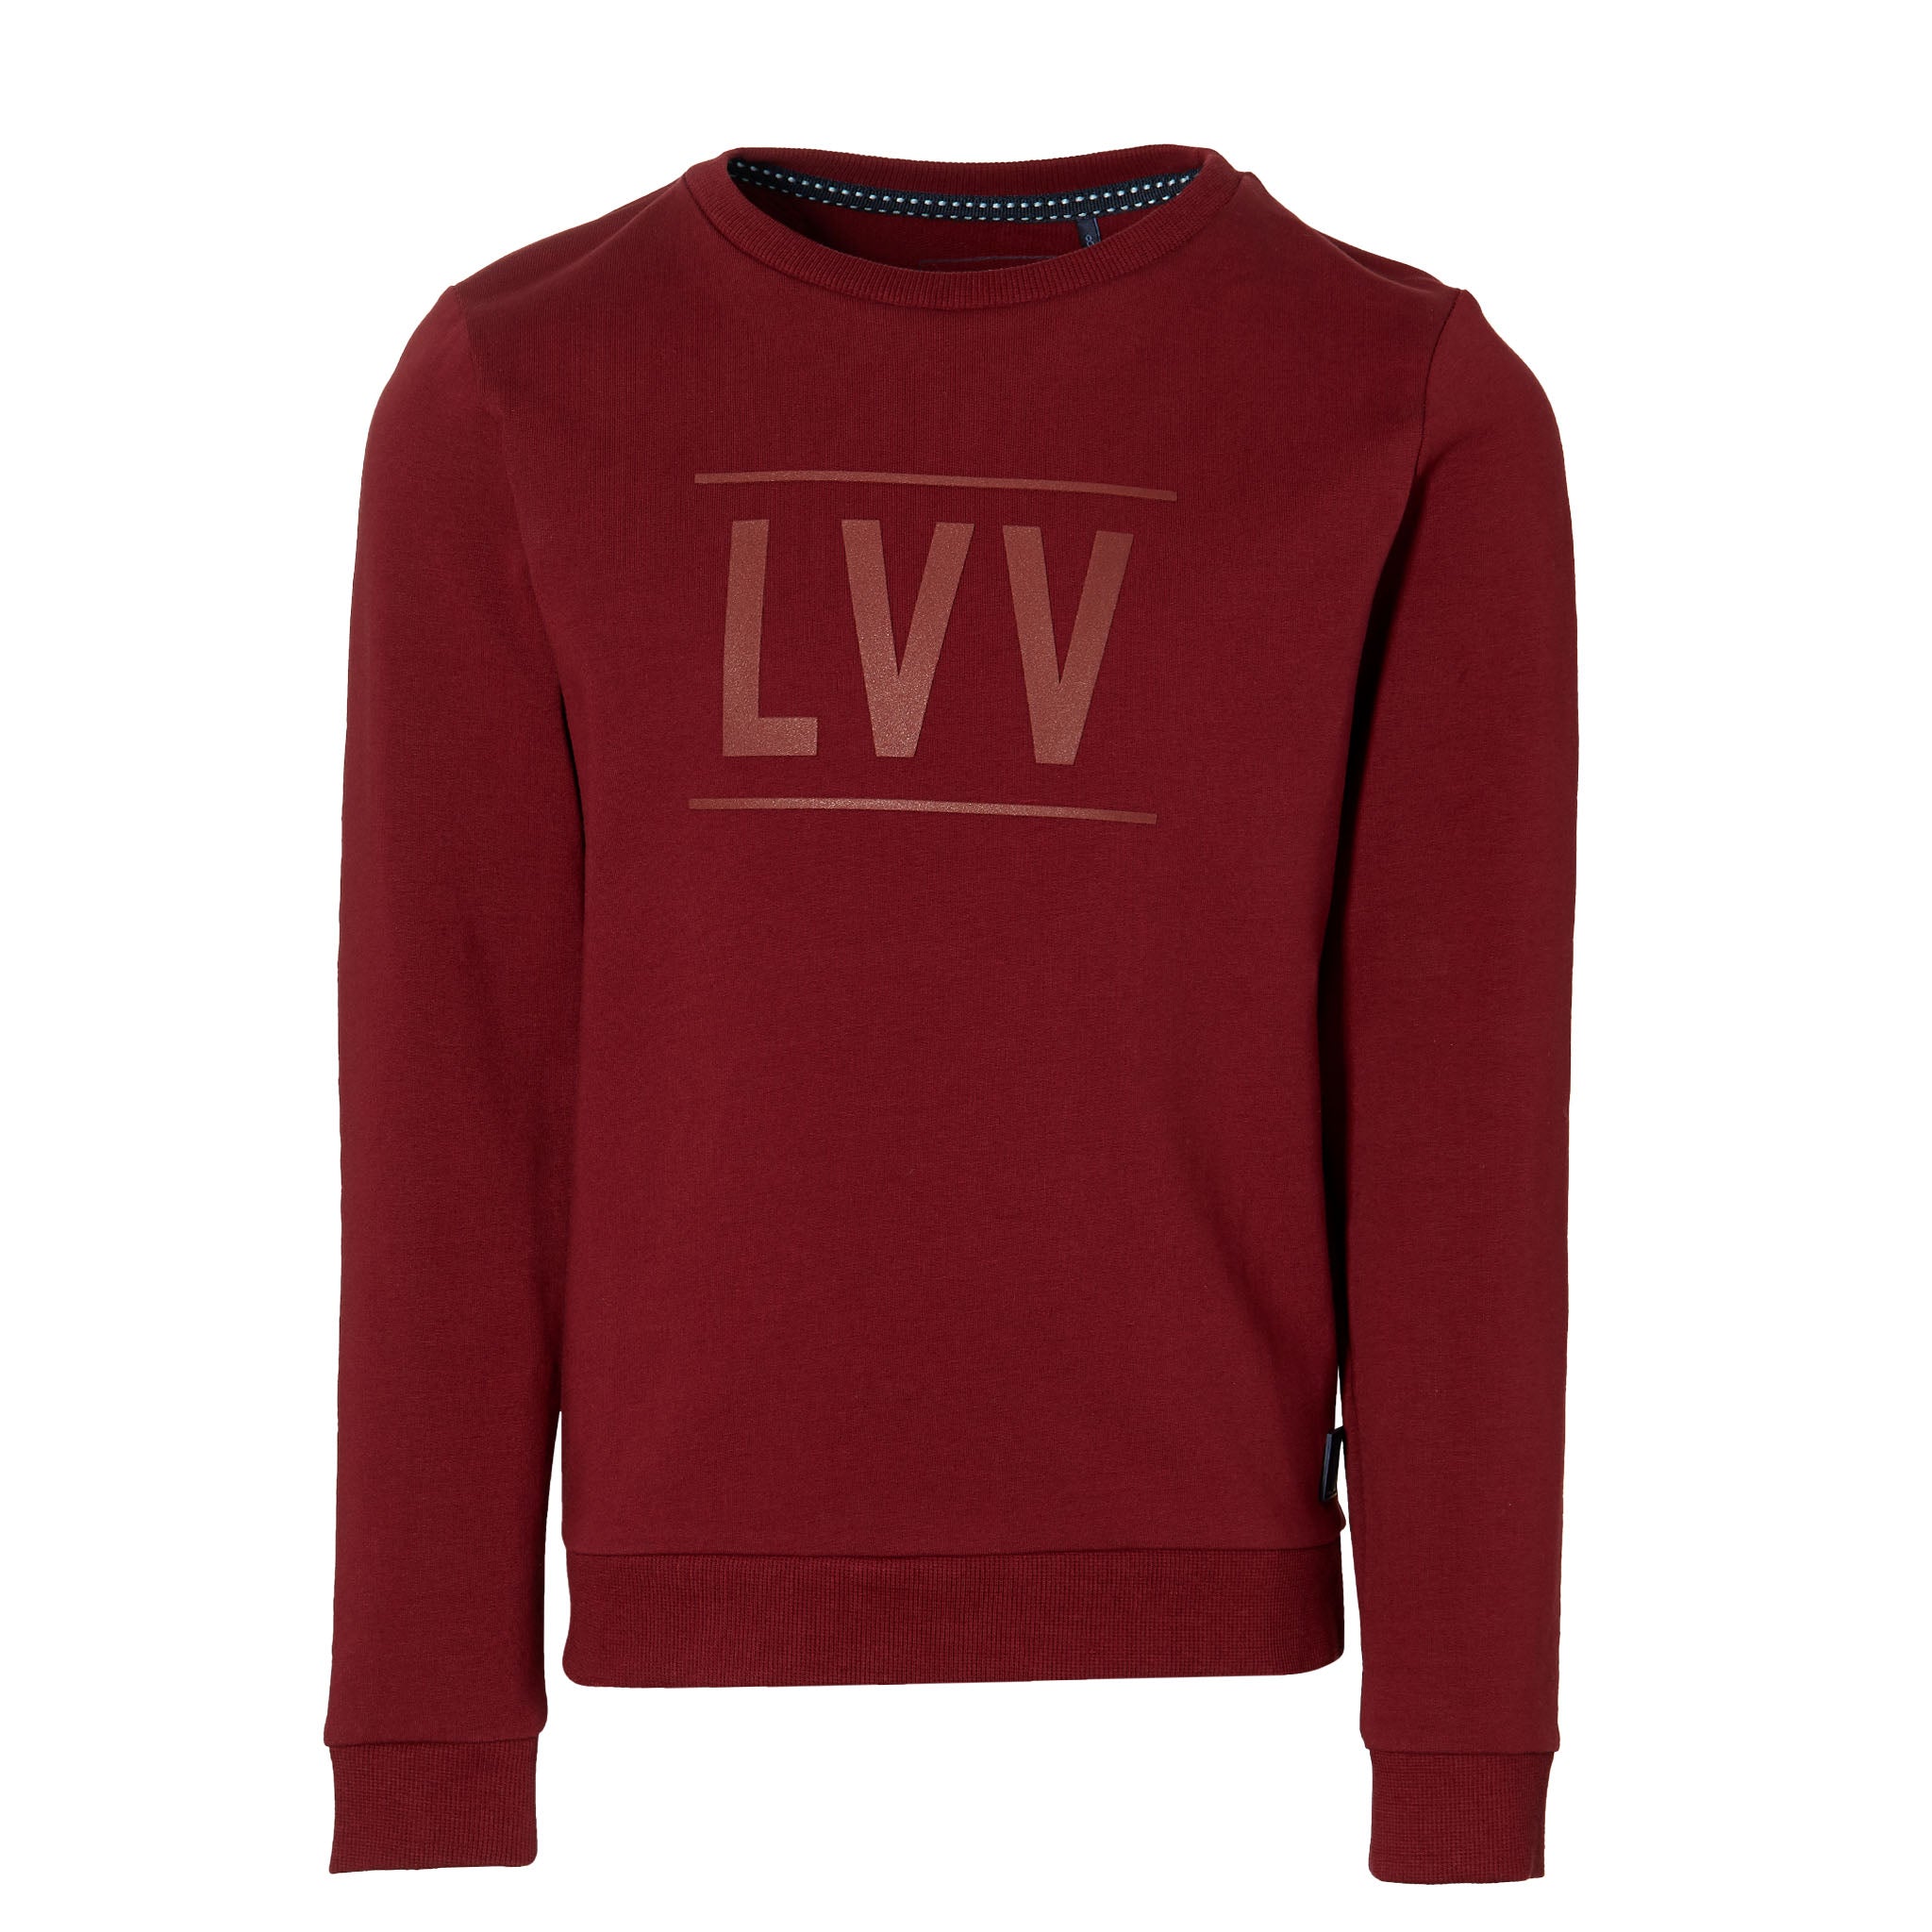 Levv Sweater Kean W203